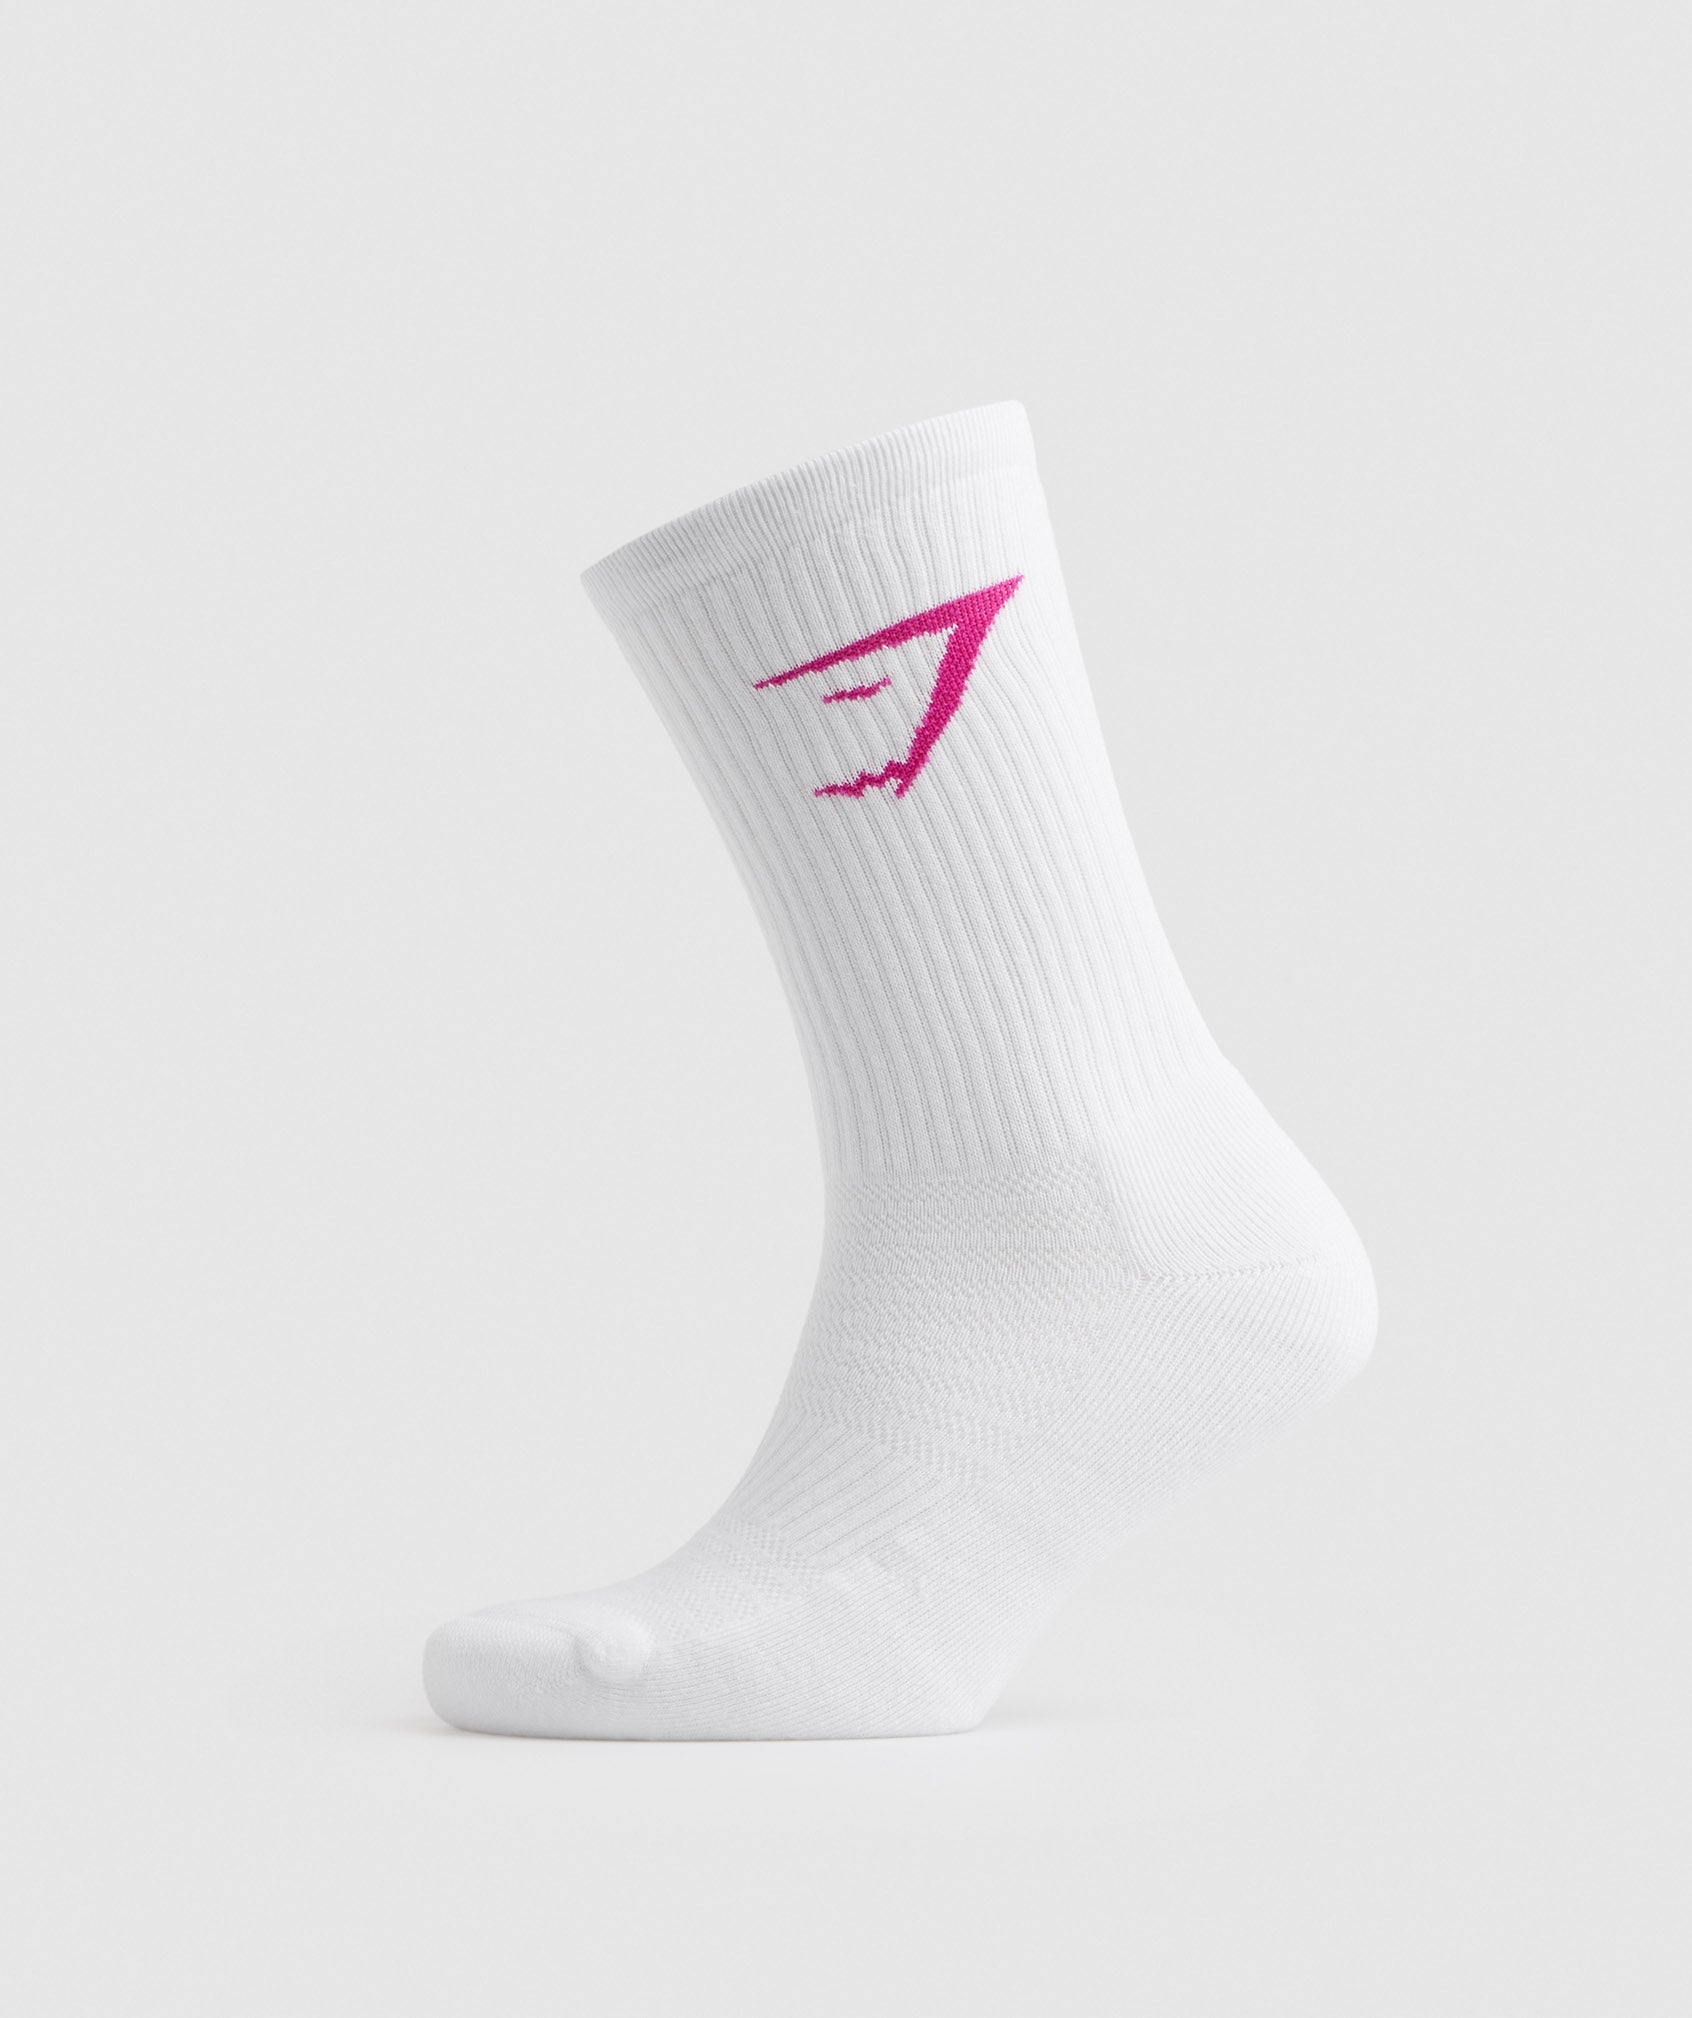 Crew Socks 3pk in Magenta Pink/White/Sweet Pink - view 6